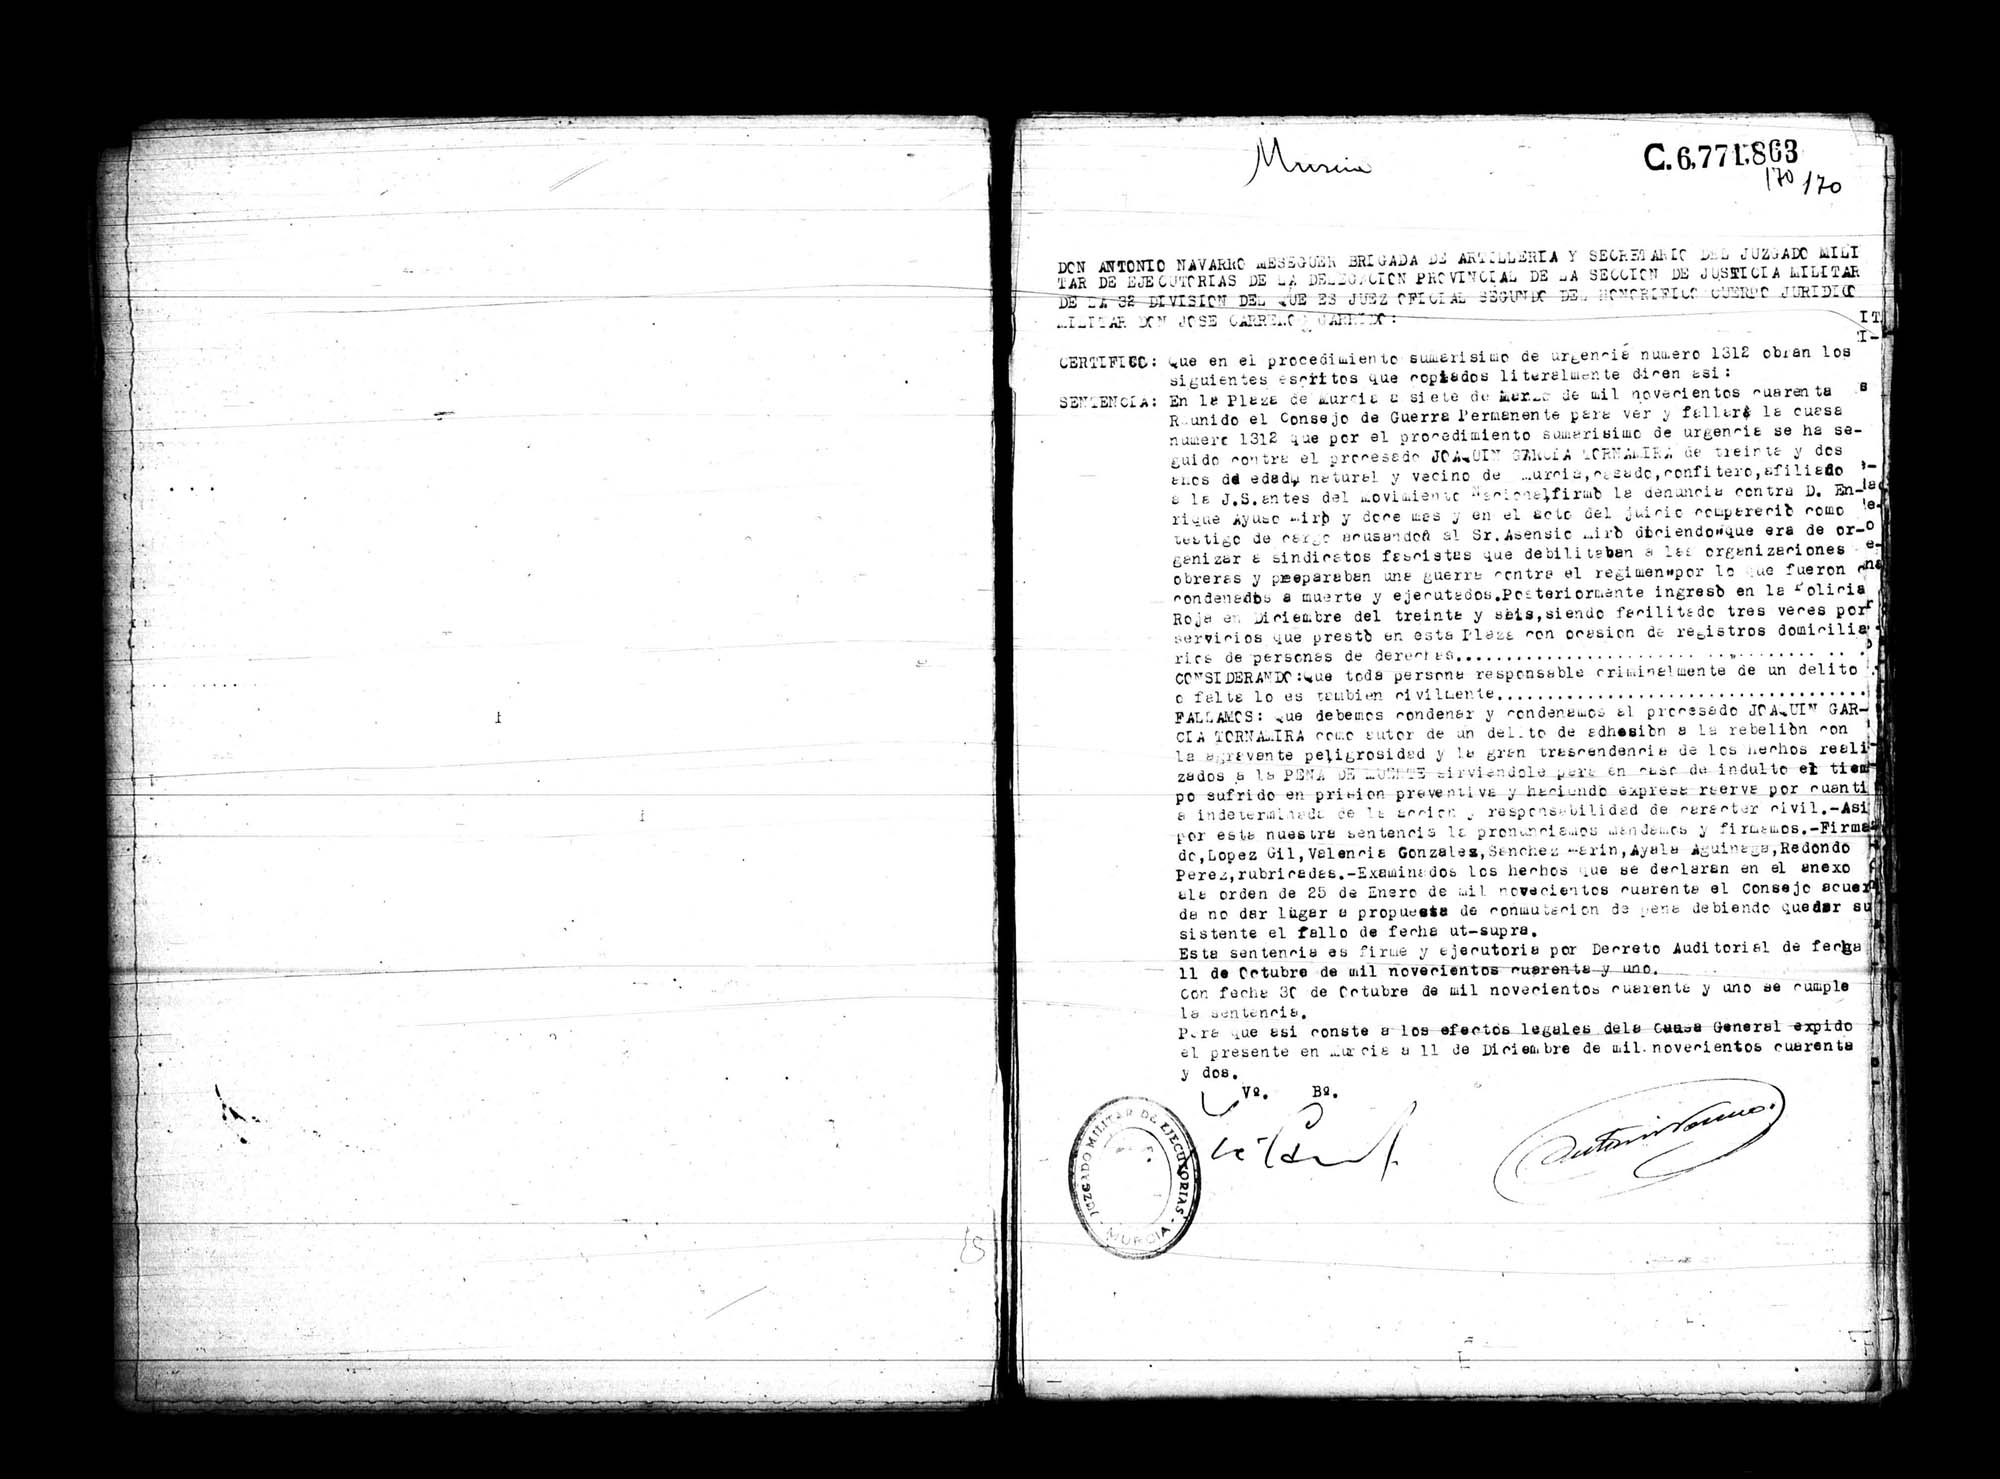 Certificado de la sentencia pronunciada contra Joaquín García Tornamira,  causa 1312, el 7 de marzo de 1940 en Murcia.